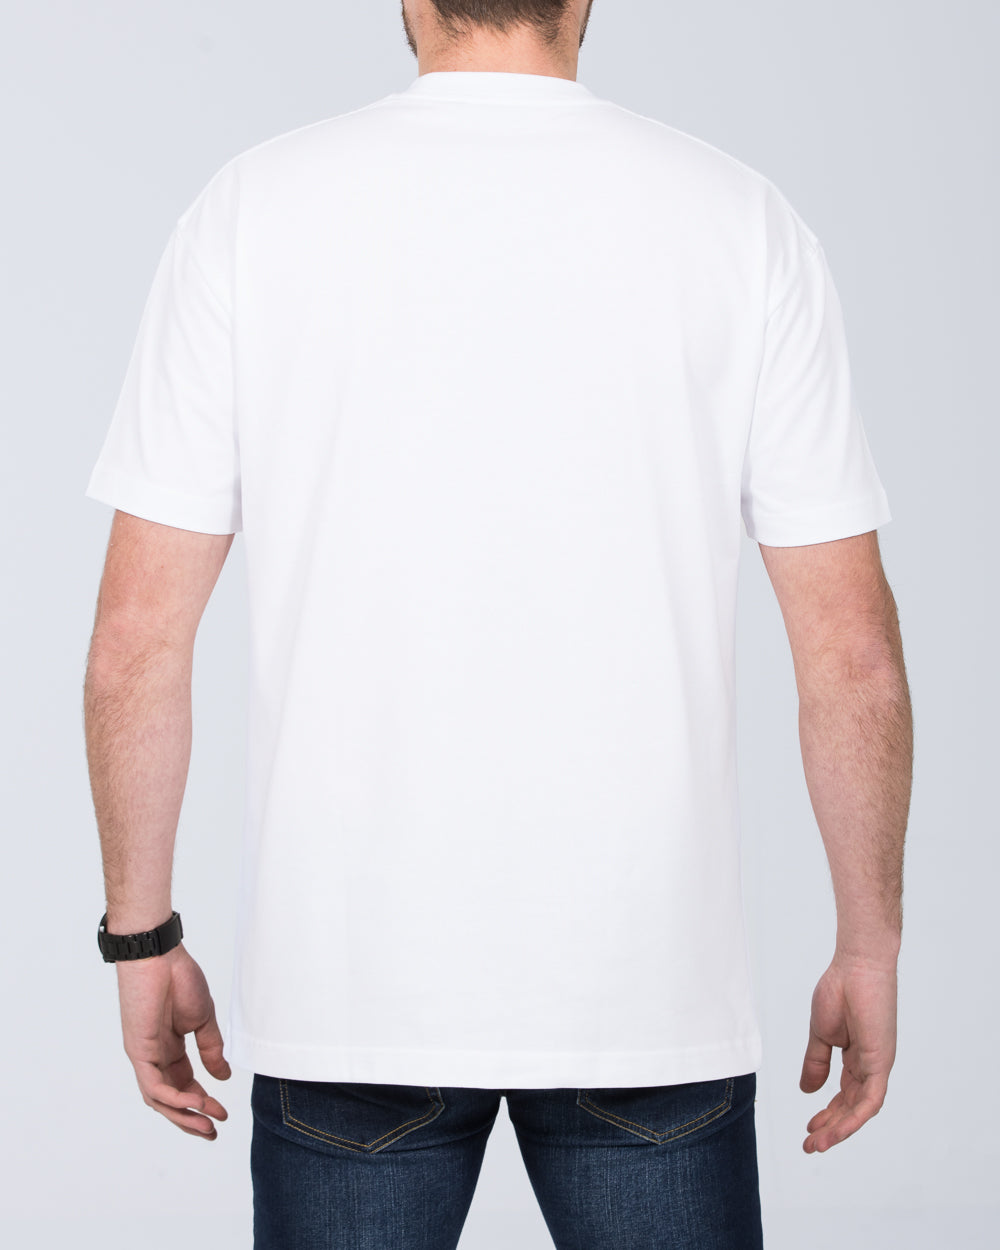 Girav Dallas Tall Oversized T-Shirt (white)